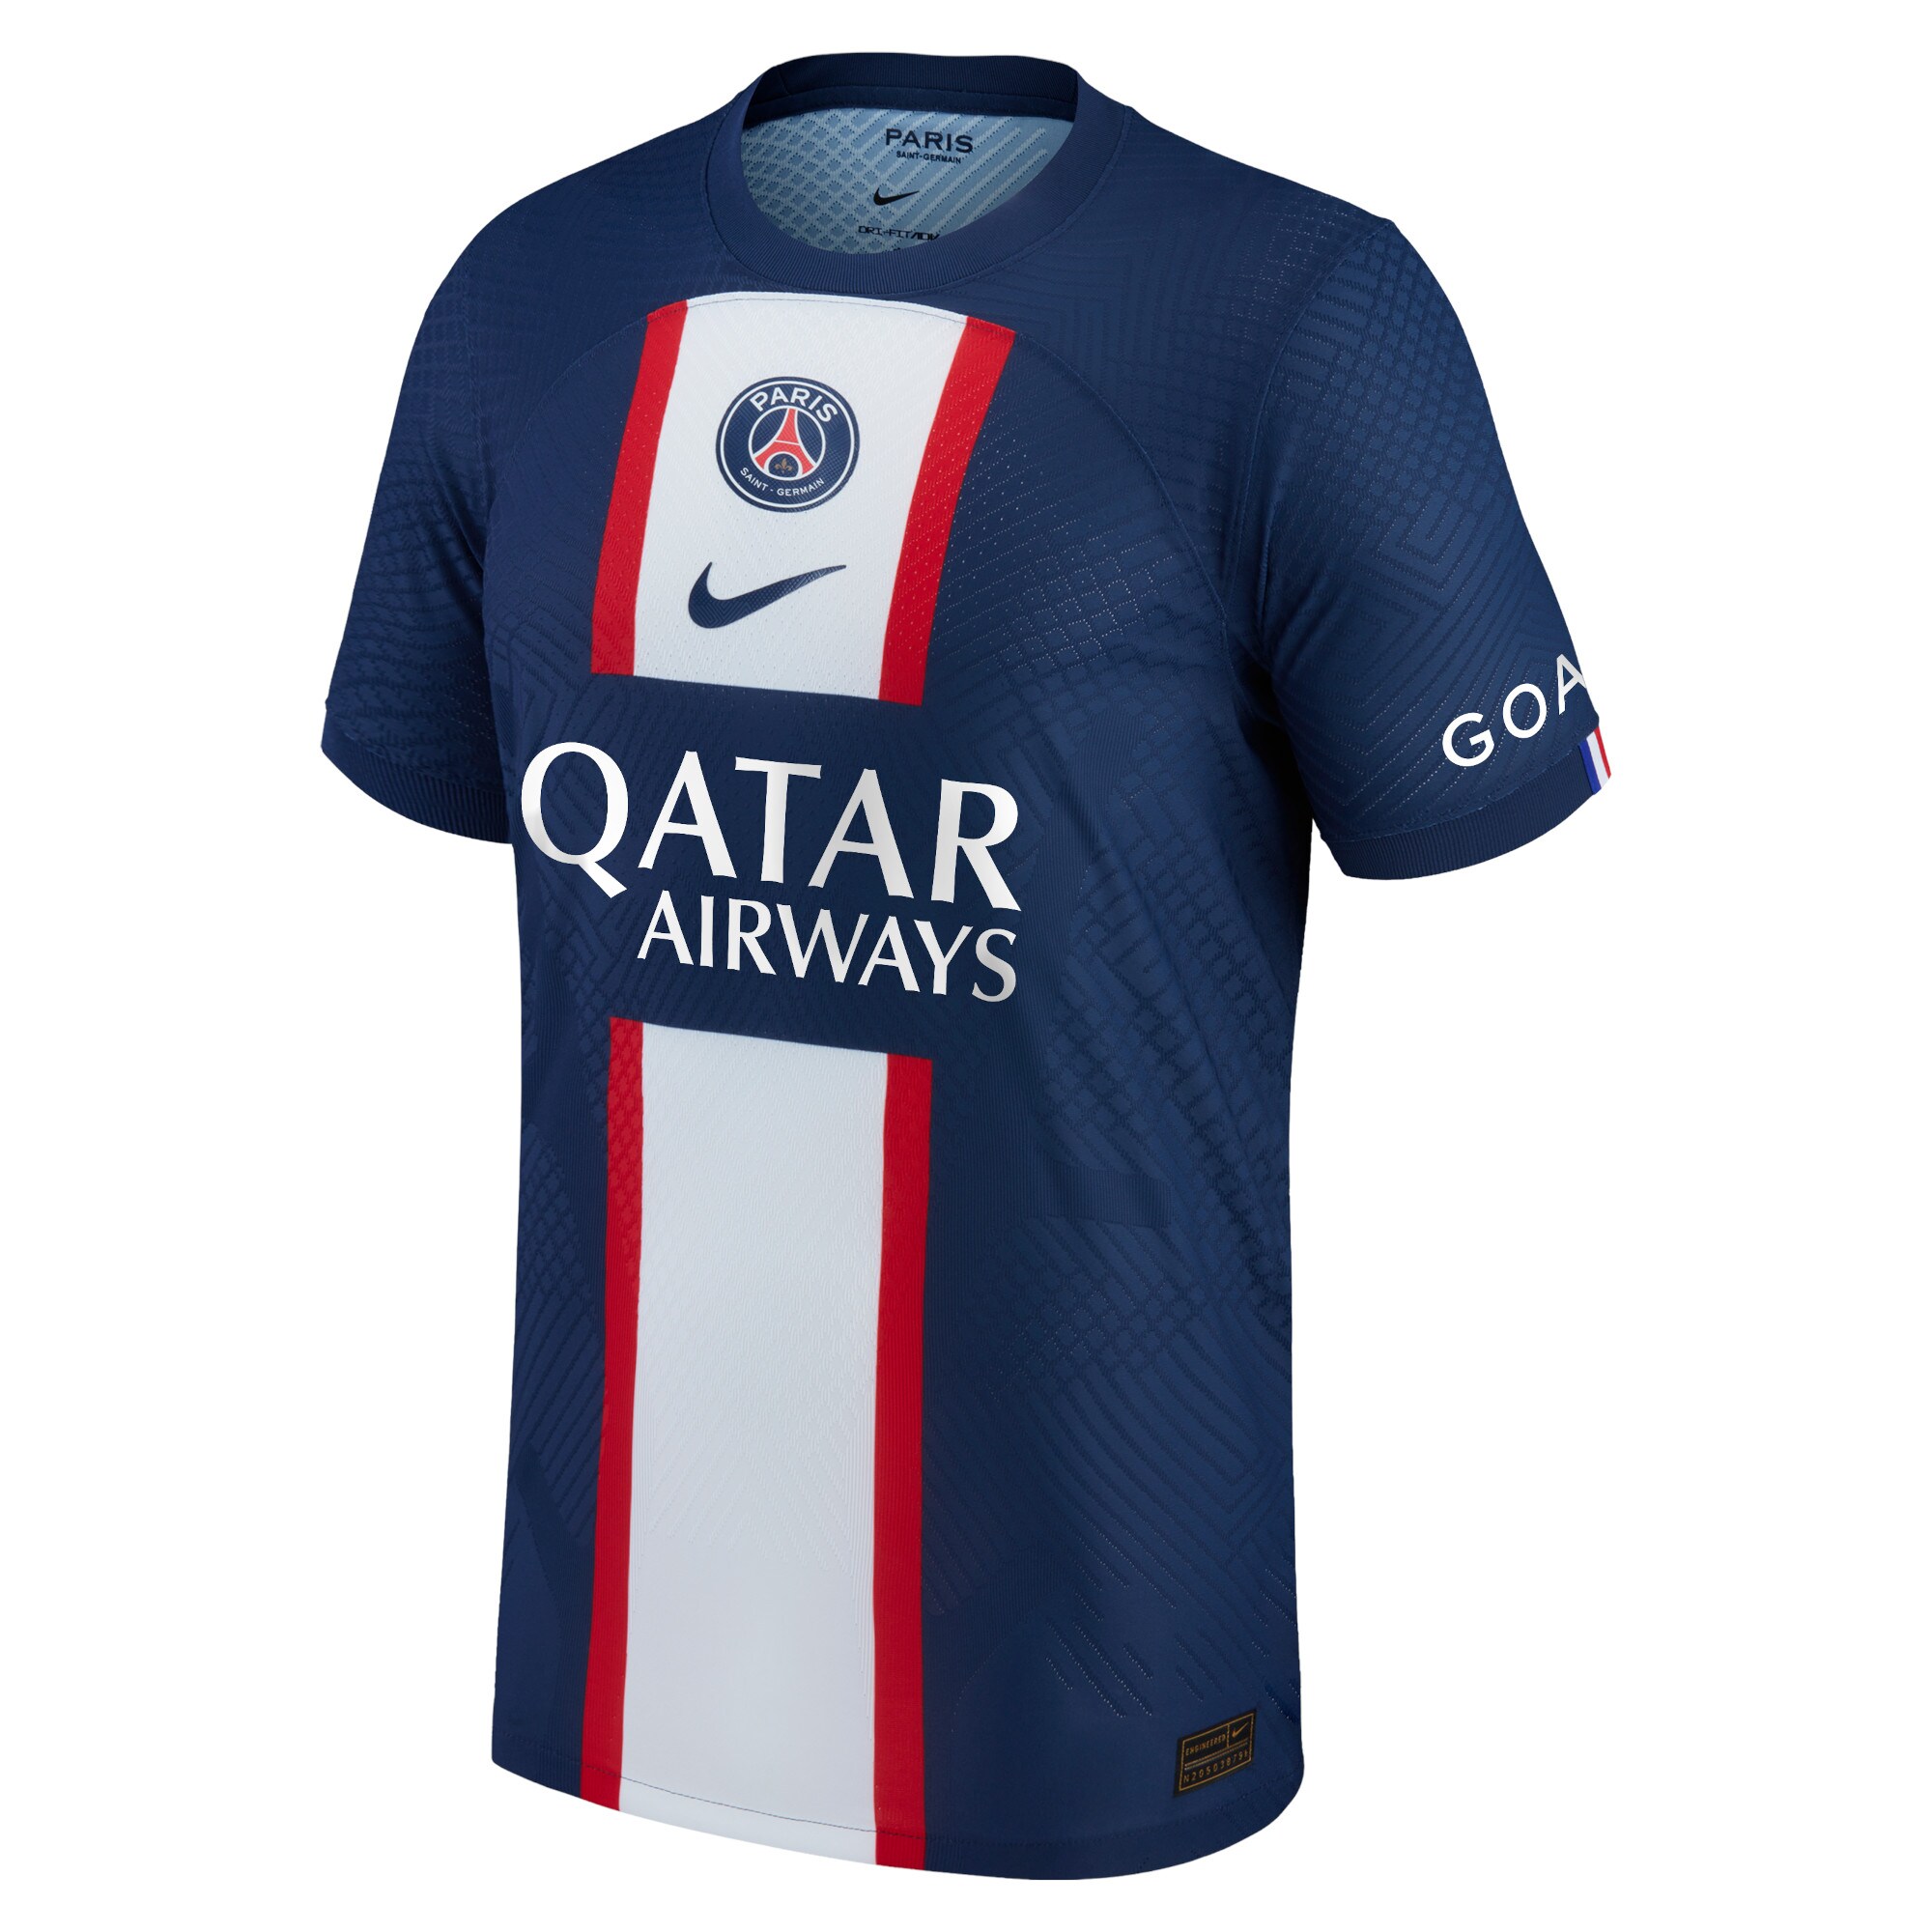 Paris Saint-Germain Home Vapor Match Shirt 2022-23 with Kurzawa 20 printing